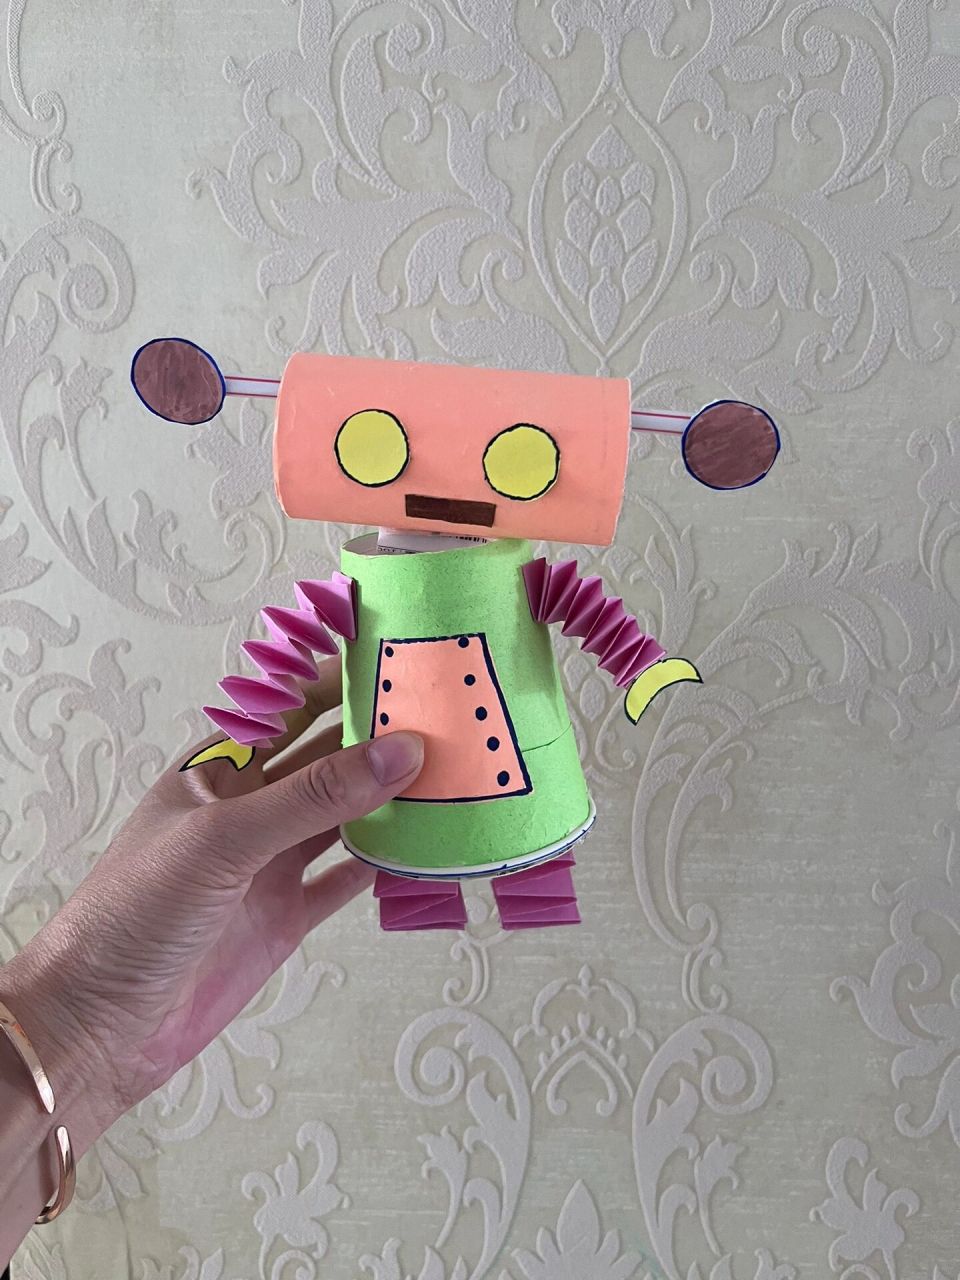 幼儿园手工又来啦!机器人06  非常简单的纸杯机器人,交作业喽